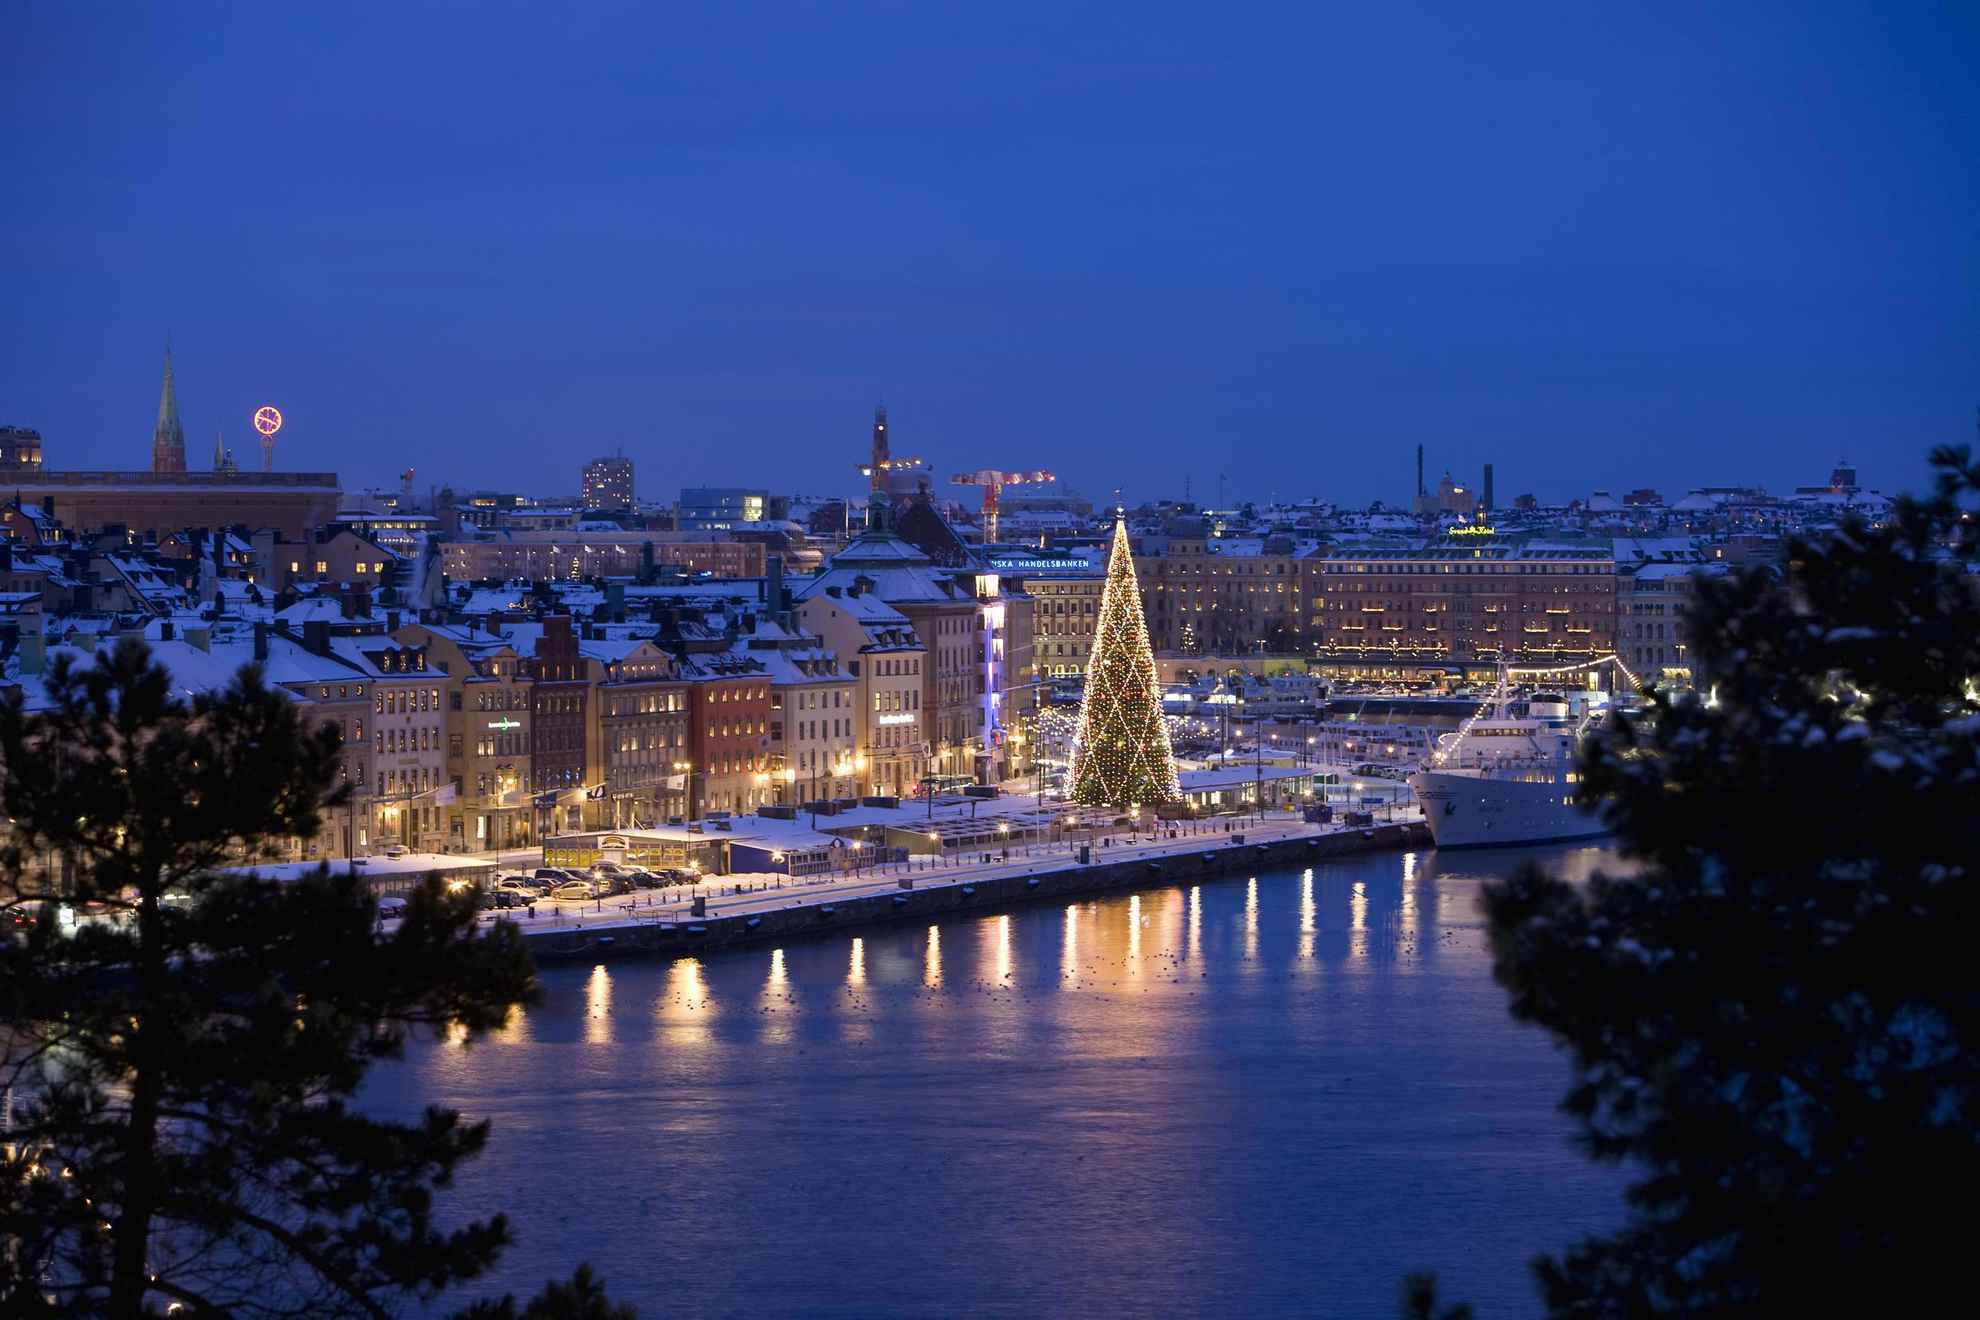 Een luchtfoto van winters Stockholm met een grote kerstboom langs het water.